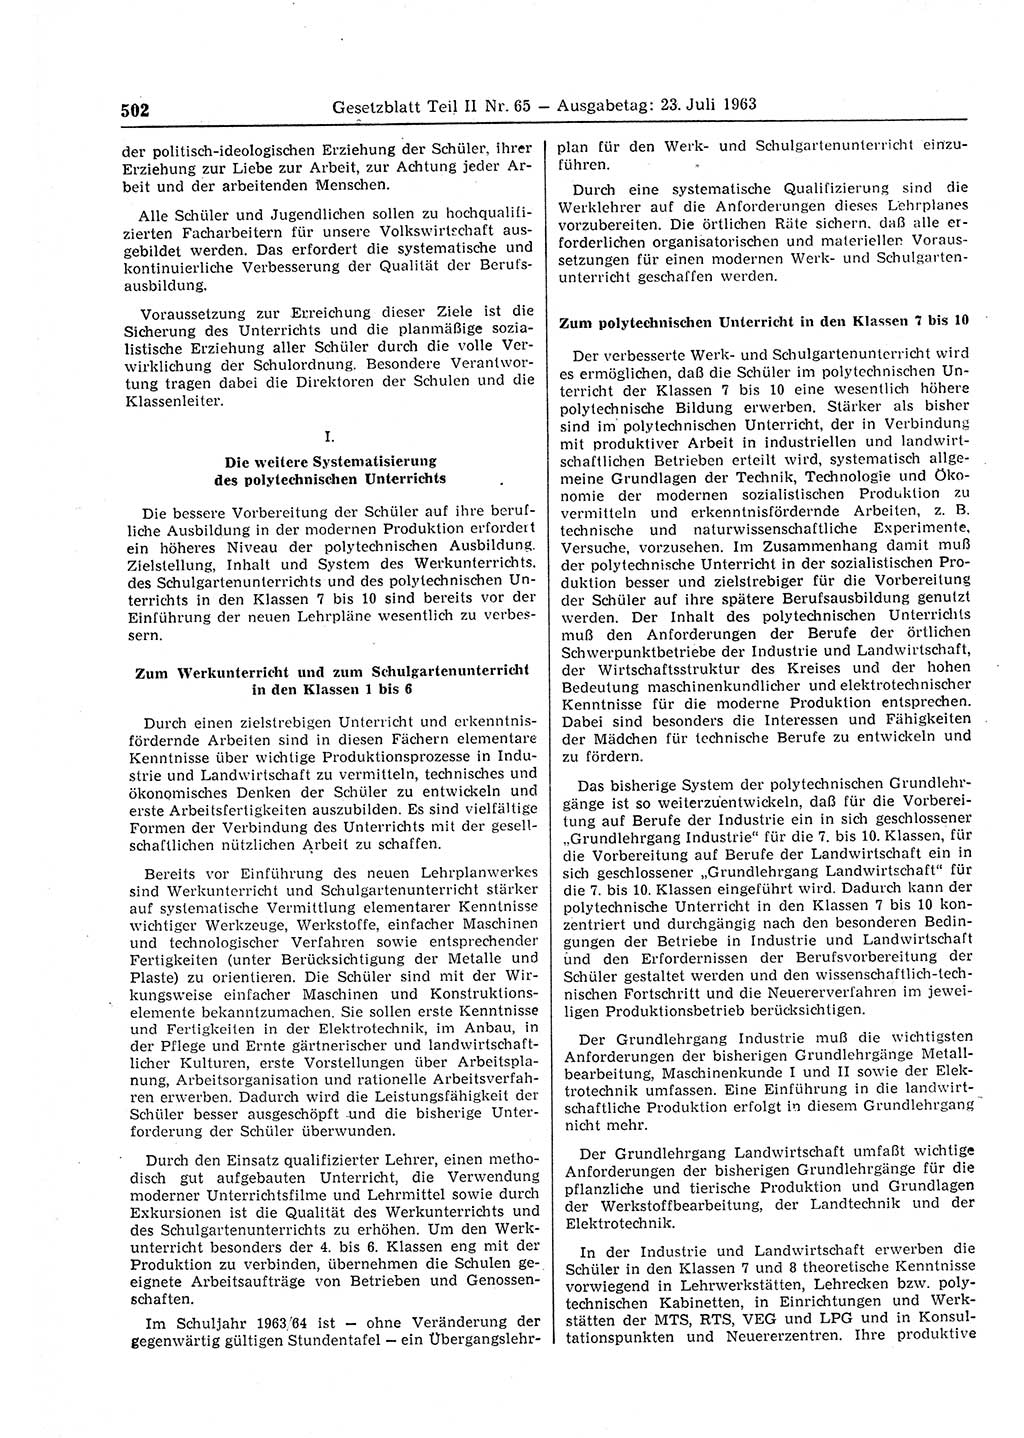 Gesetzblatt (GBl.) der Deutschen Demokratischen Republik (DDR) Teil ⅠⅠ 1963, Seite 502 (GBl. DDR ⅠⅠ 1963, S. 502)